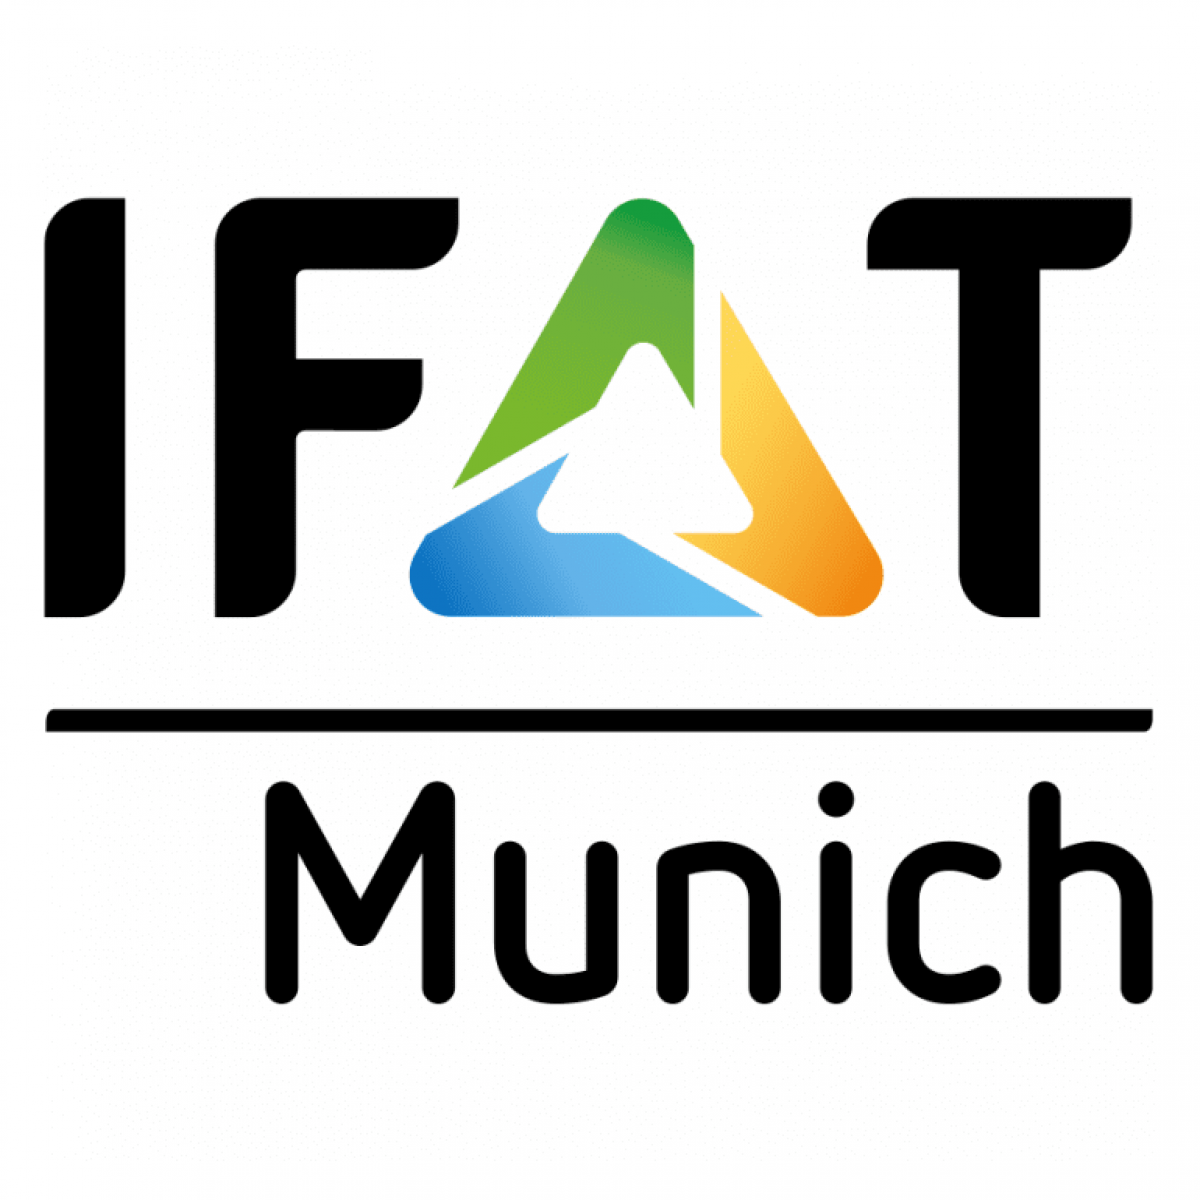 IFAT 2024 Munich